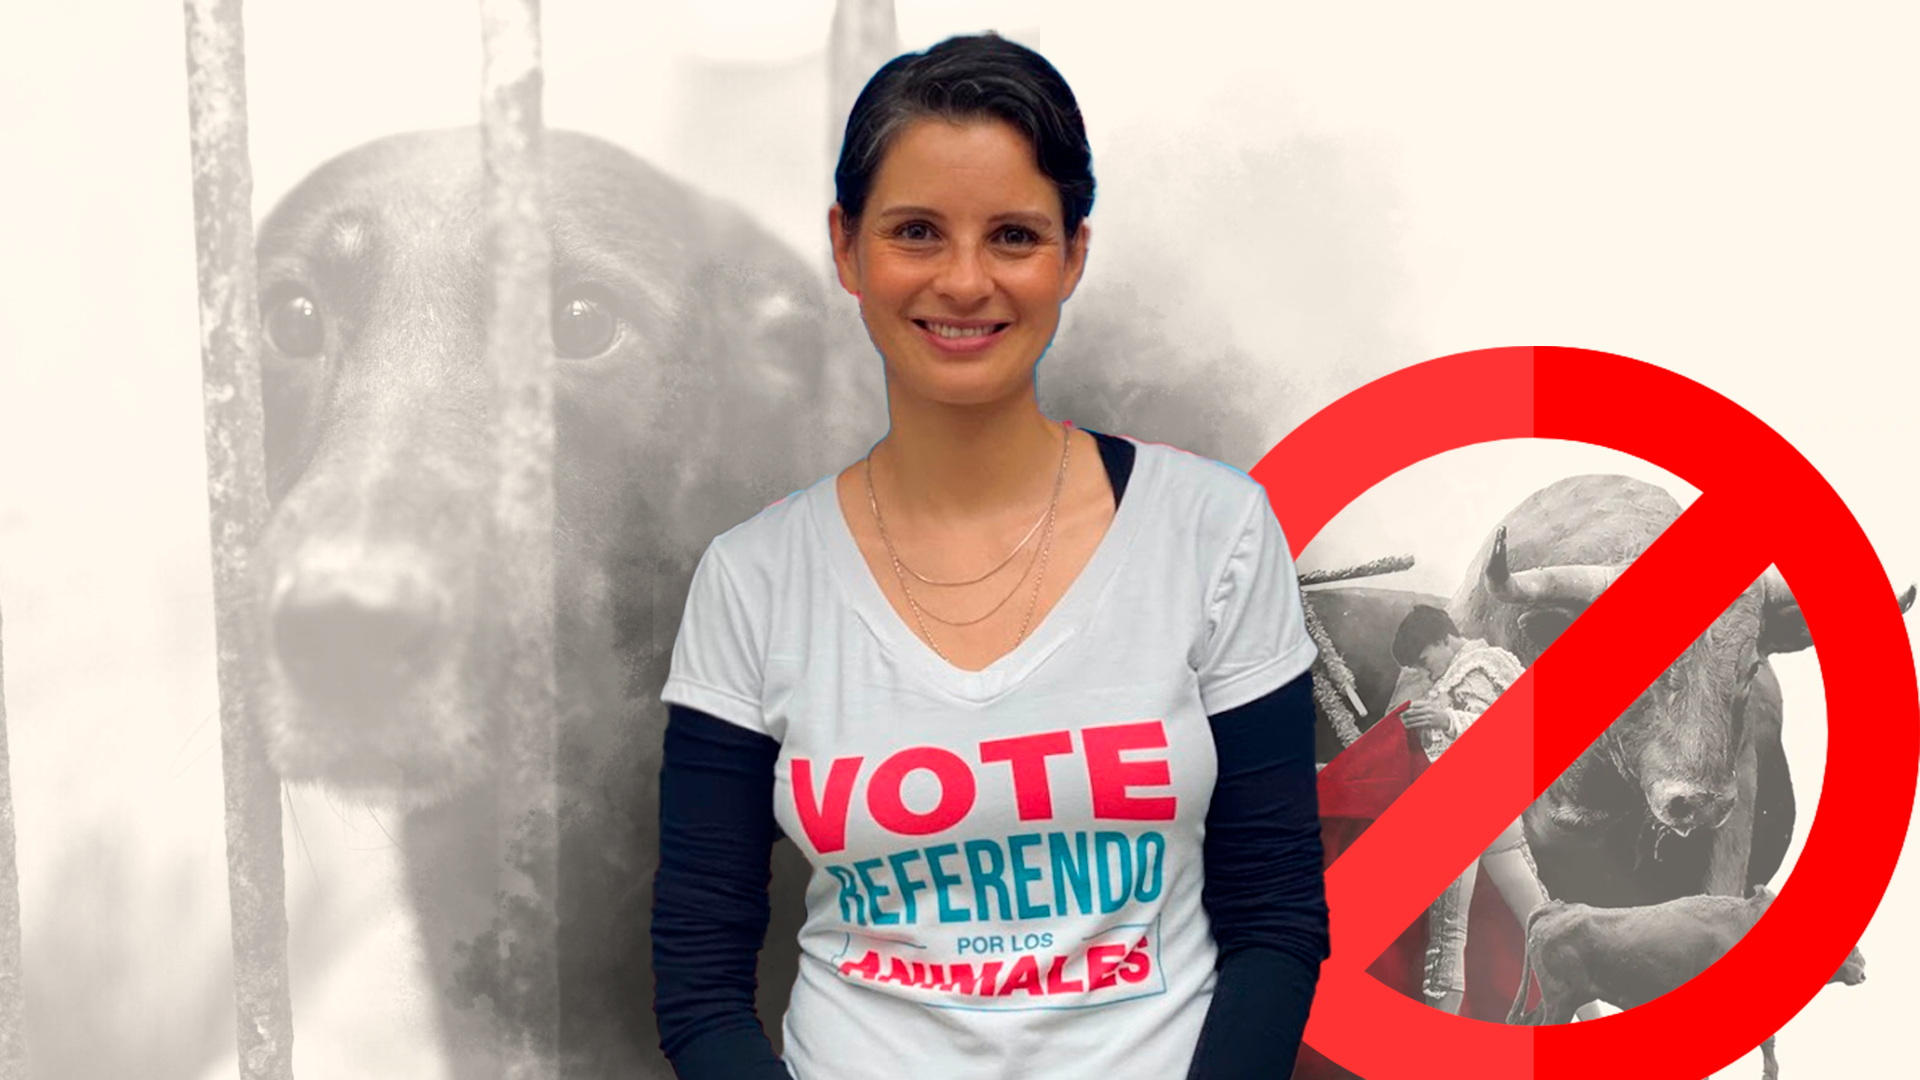 La senadora Andrea Padilla pelea otro round contra la crueldad animal en los espectáculos